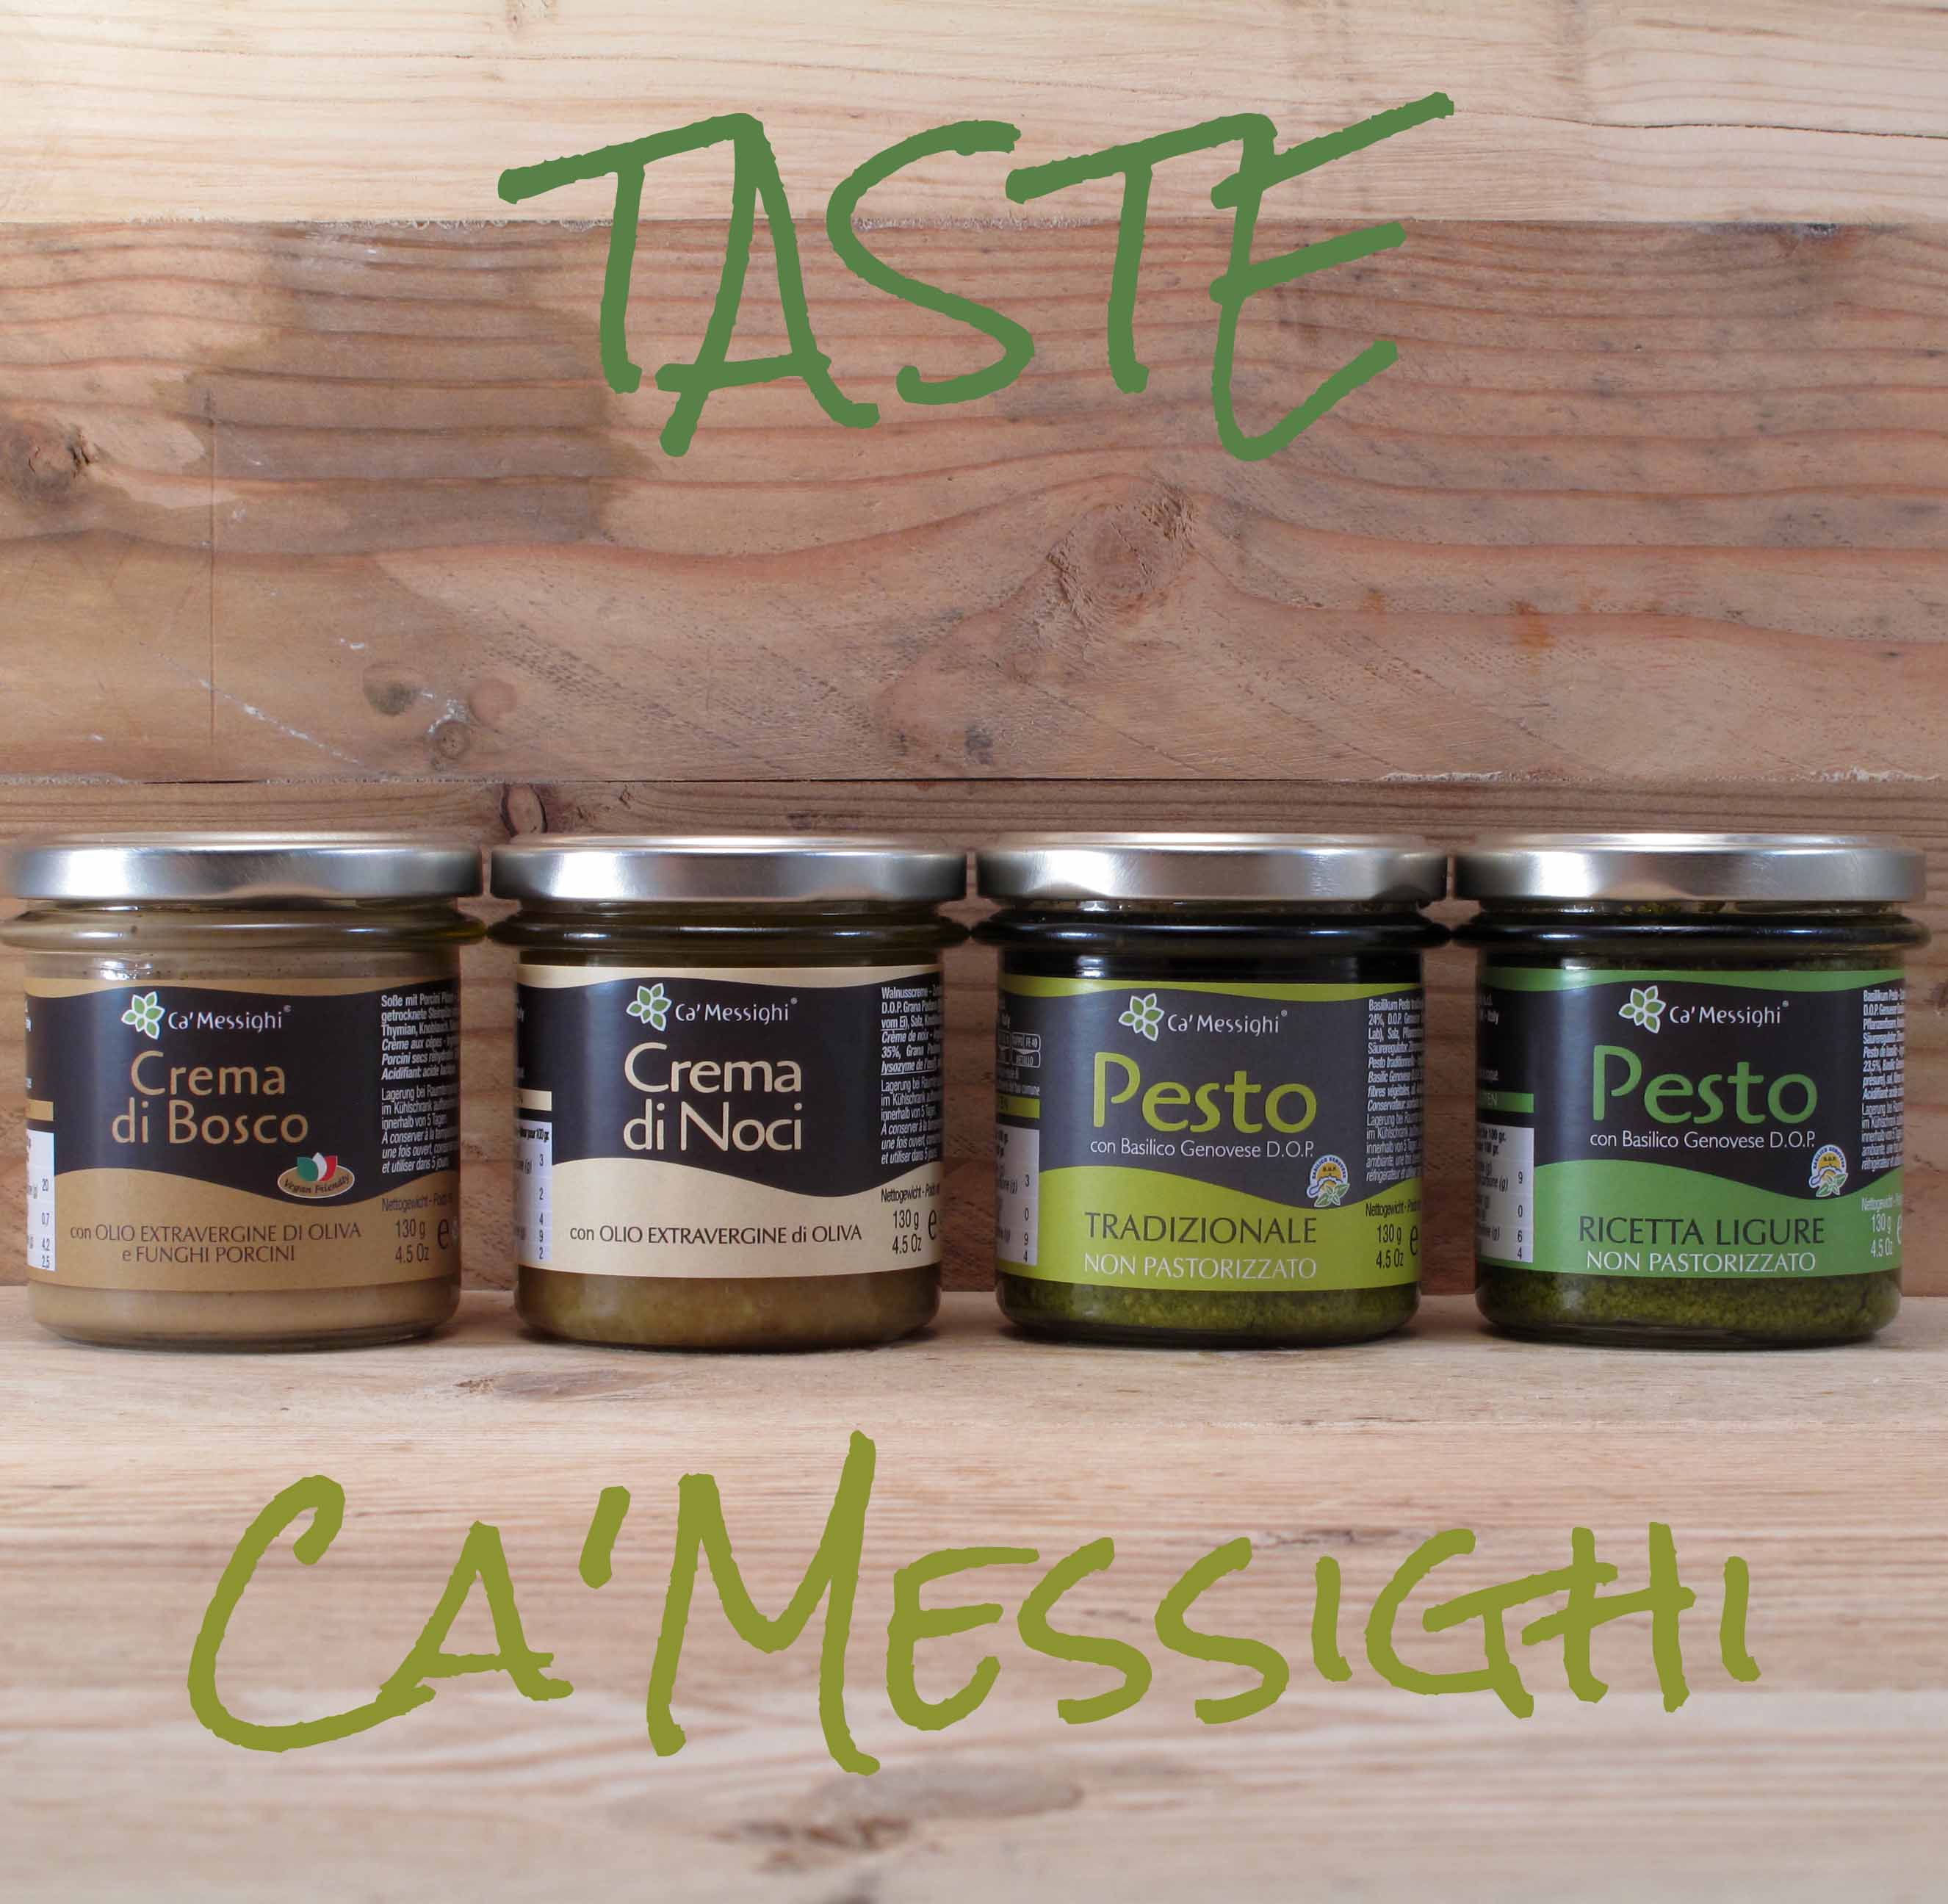 Taste-Ca-Messighi